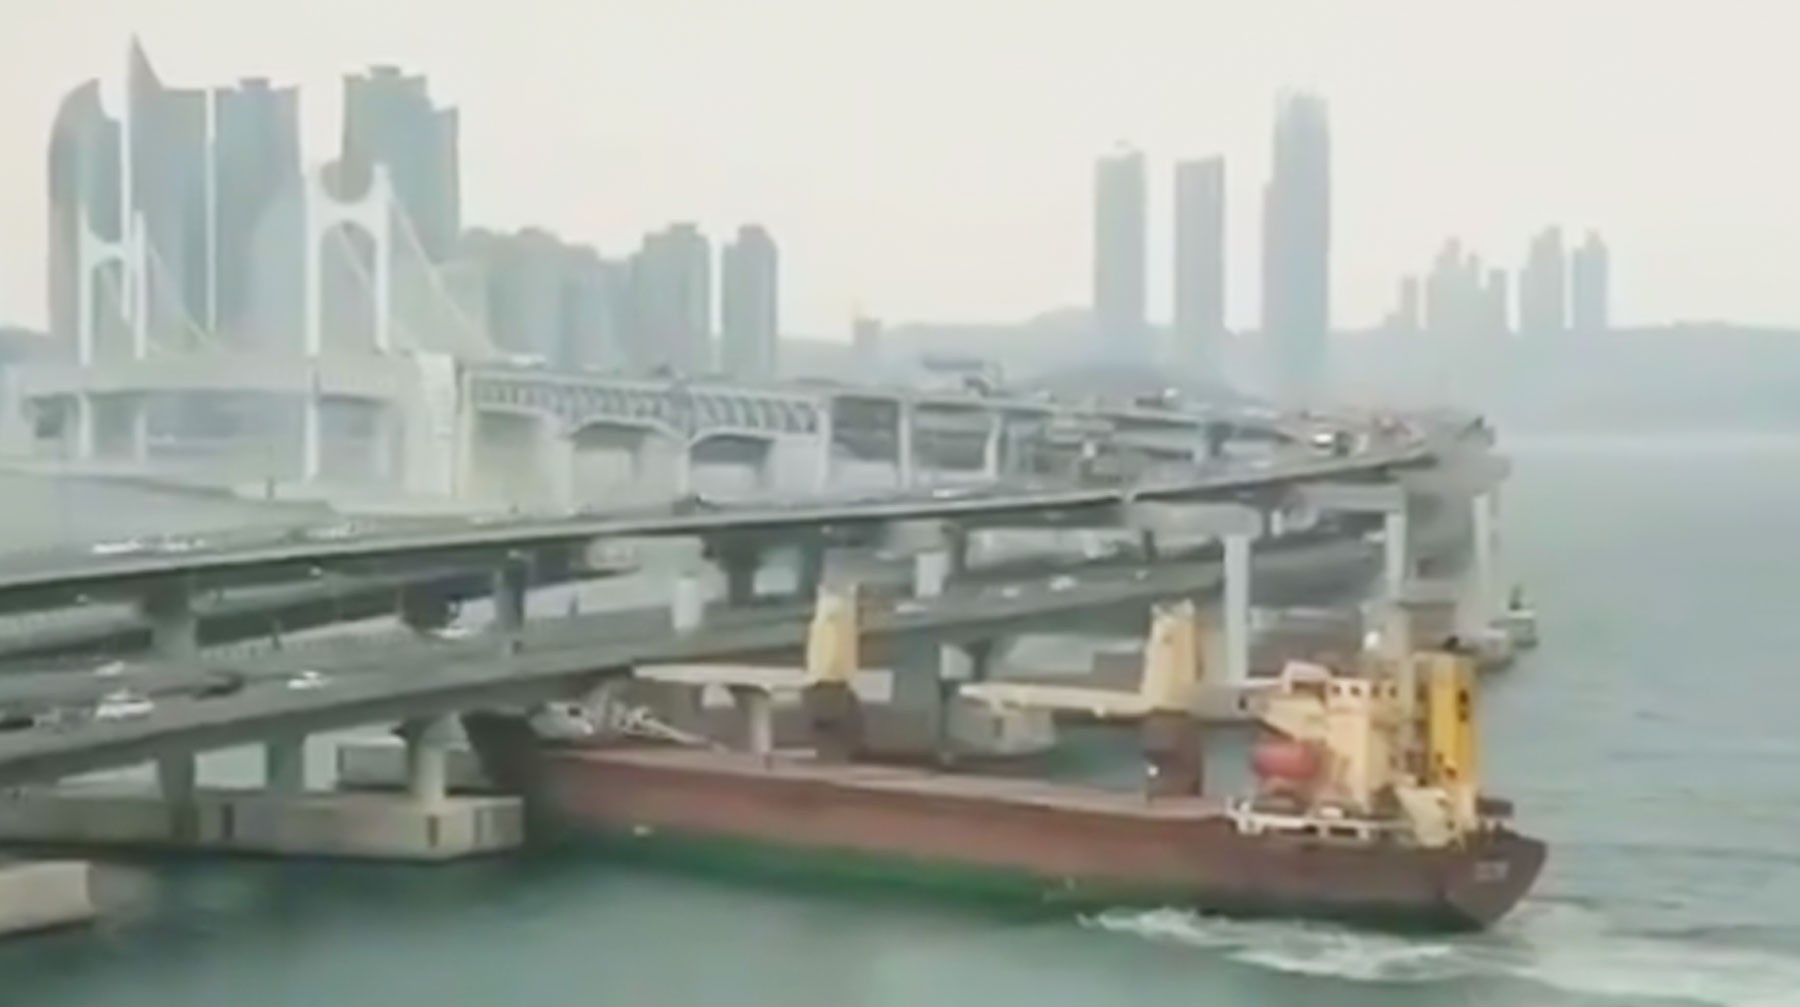 Dailystorm - Российское судно с пьяным капитаном протаранило автомобильный мост в Корее